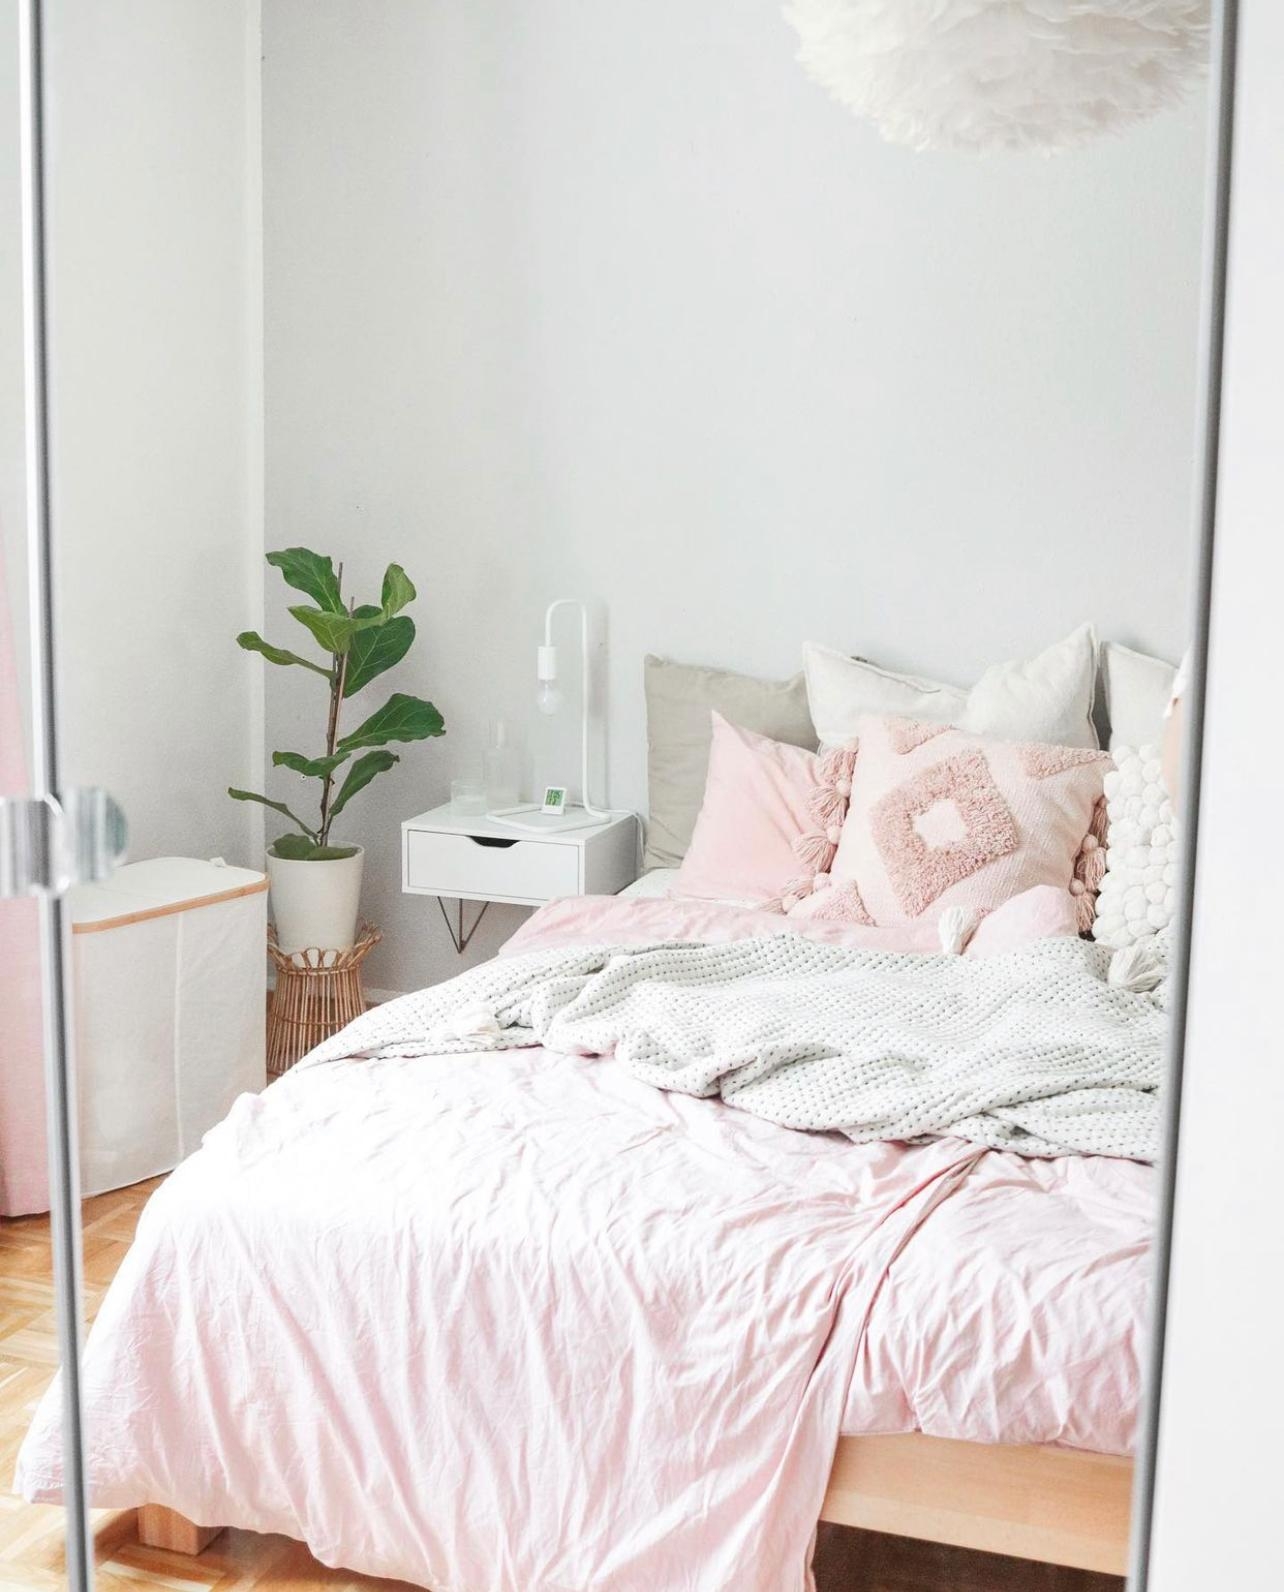 Bedroom vibes 💕
#bedroom #schlafzimmer #cozybedroom #einrichtung #skandi #scandinavianhome